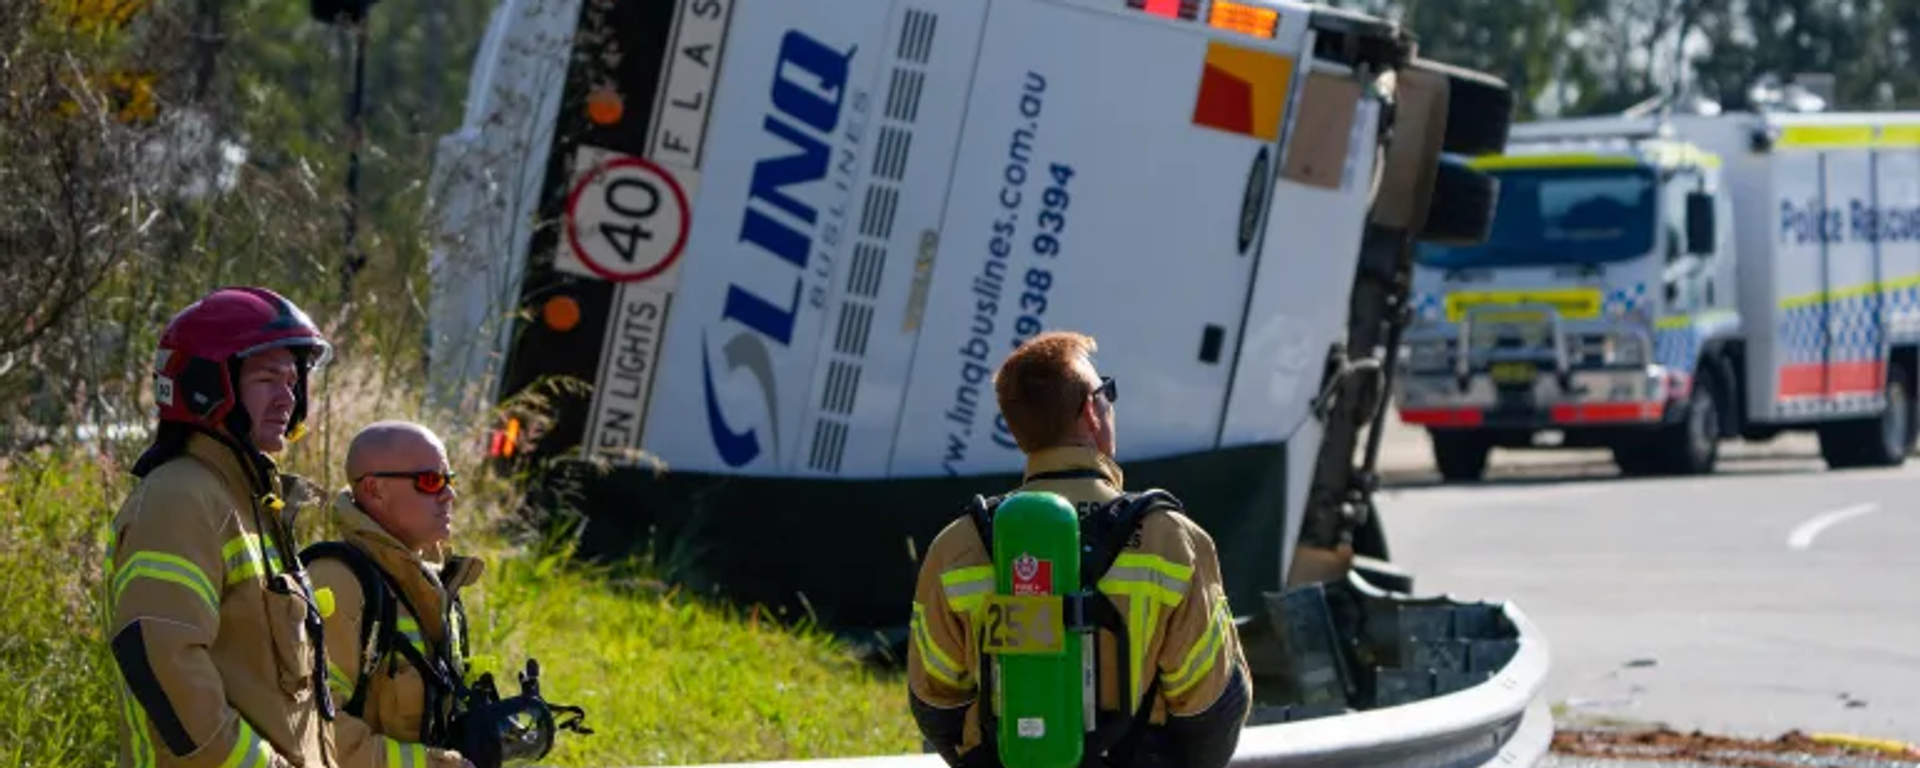 Avustralya’nın Yeni Güney Galler eyaletinde meydana gelen otobüs kazasında 10 kişi hayatını kaybetti, 11 kişi yaralandı. Kaza, Avustralya'da son 30 yılın en feci trafik kazası olarak tarihe geçti.  - Sputnik Türkiye, 1920, 12.06.2023